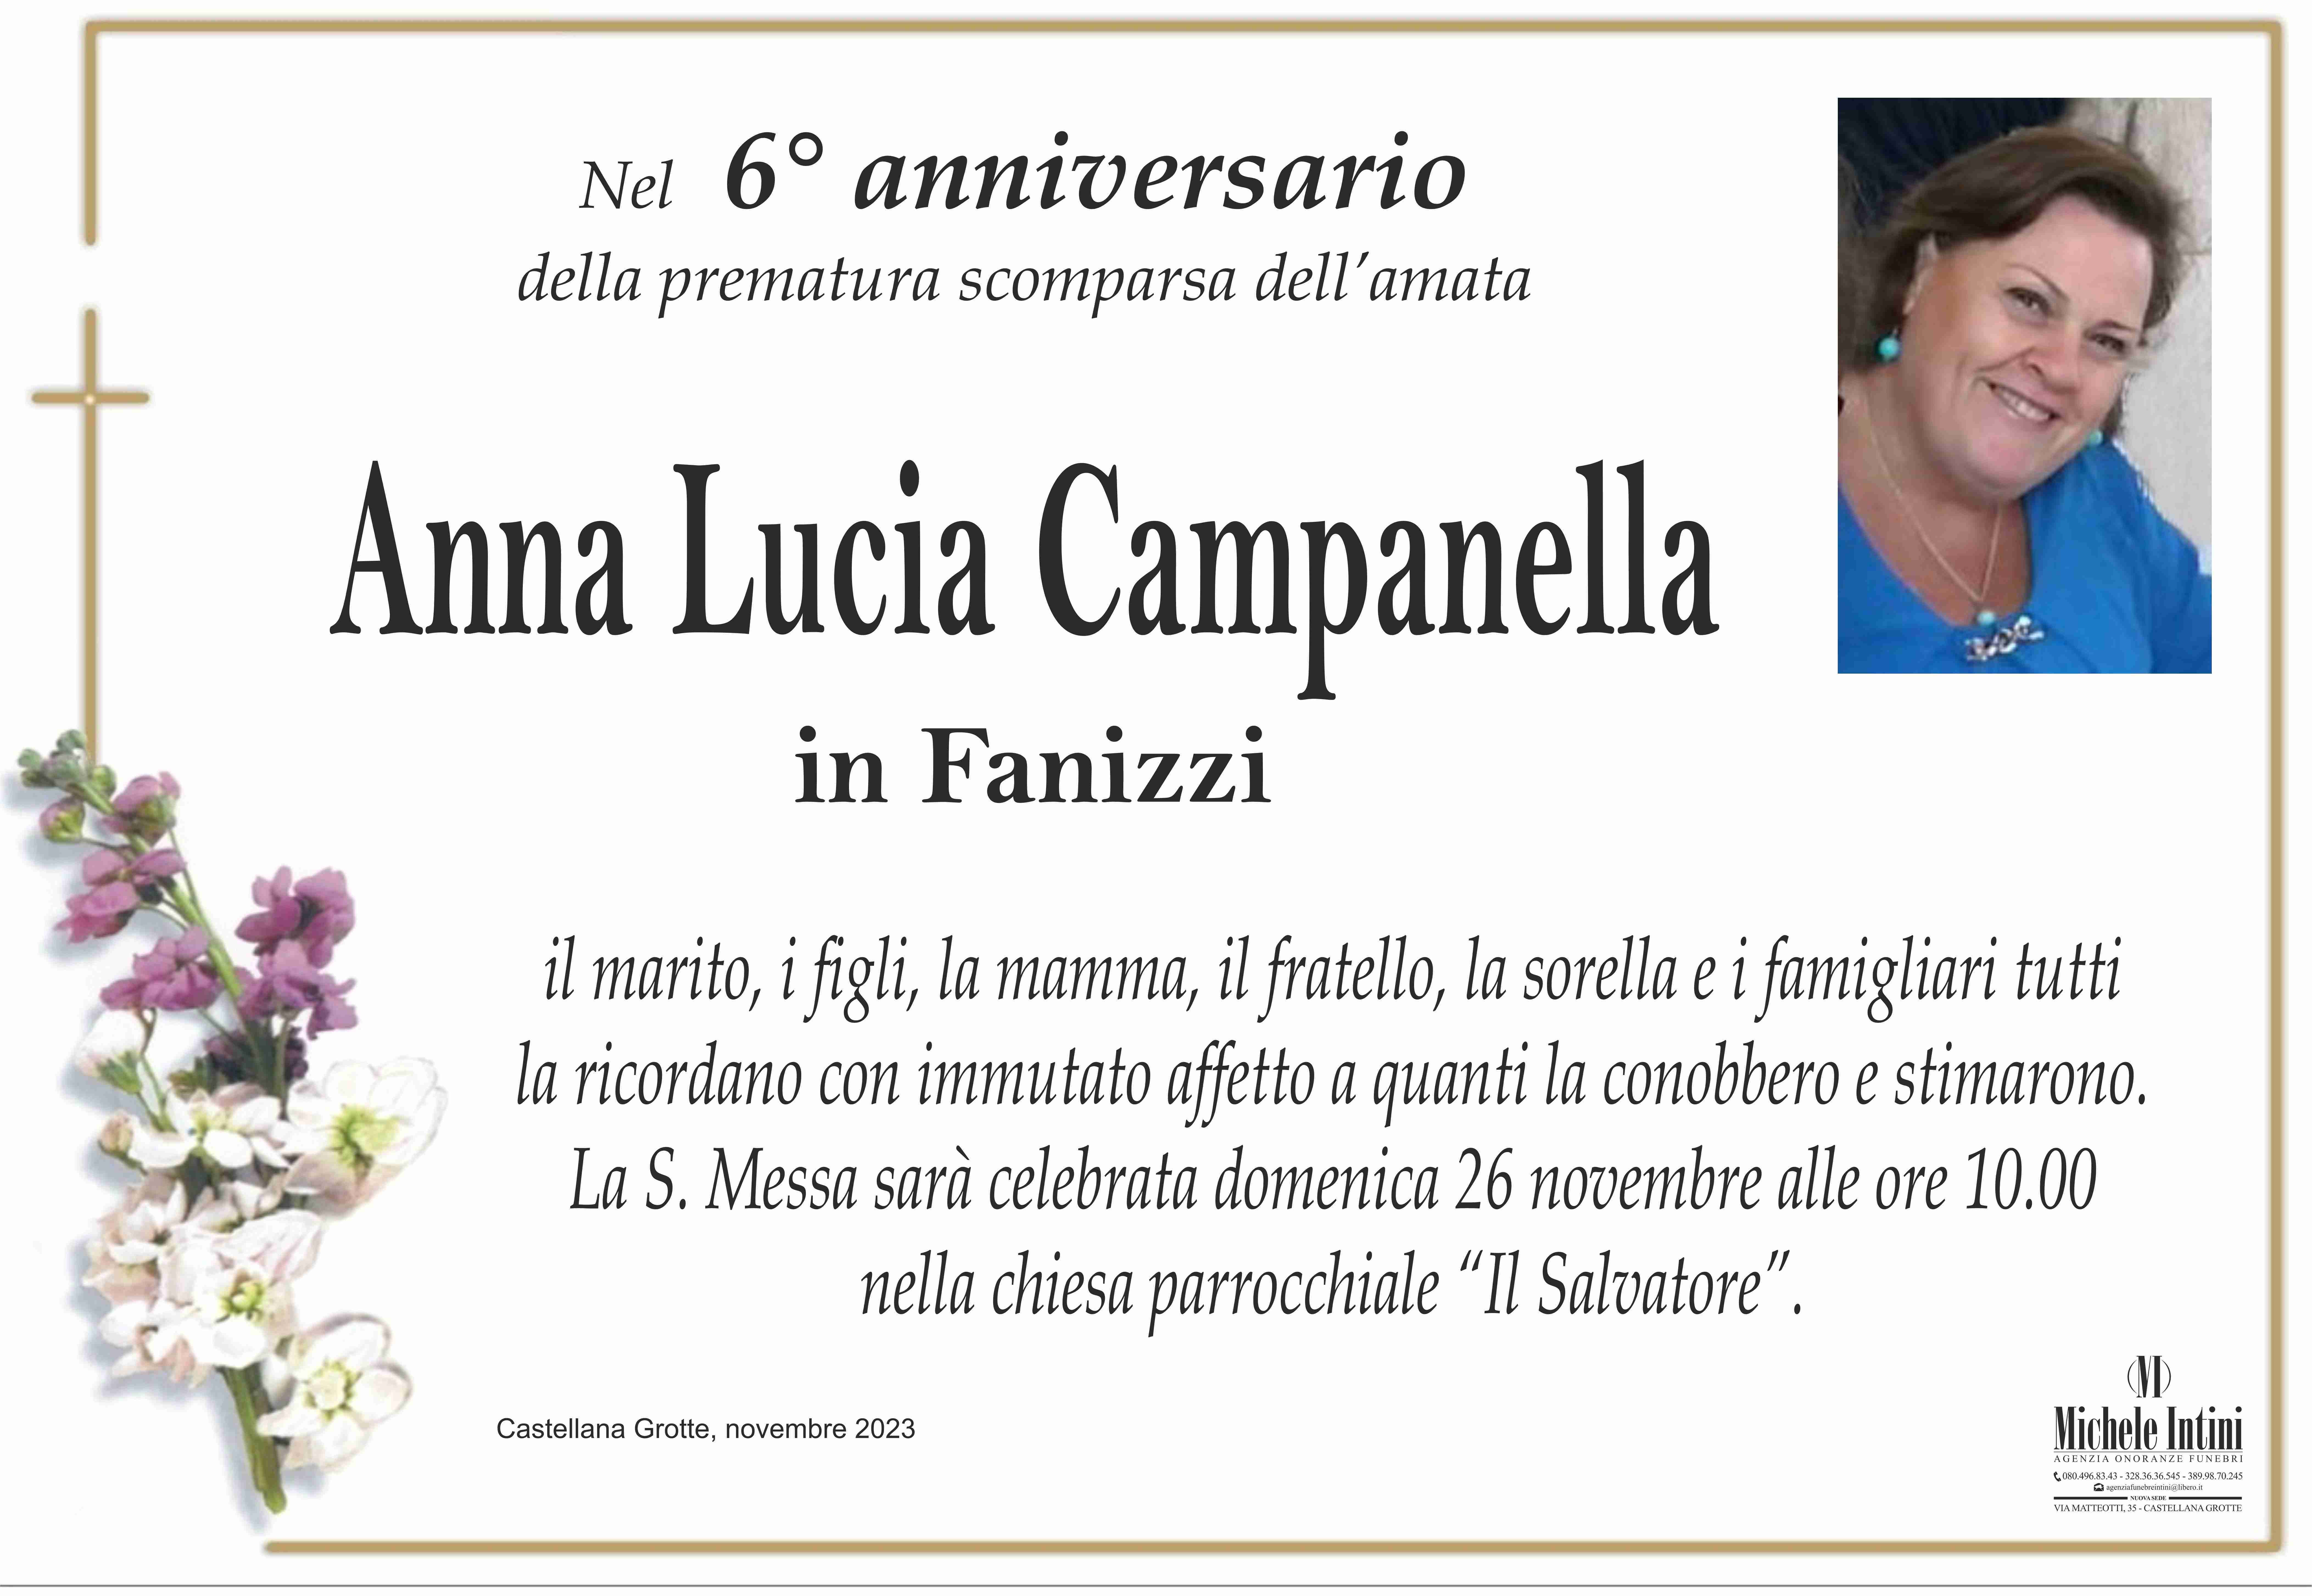 Anna Lucia Campanella